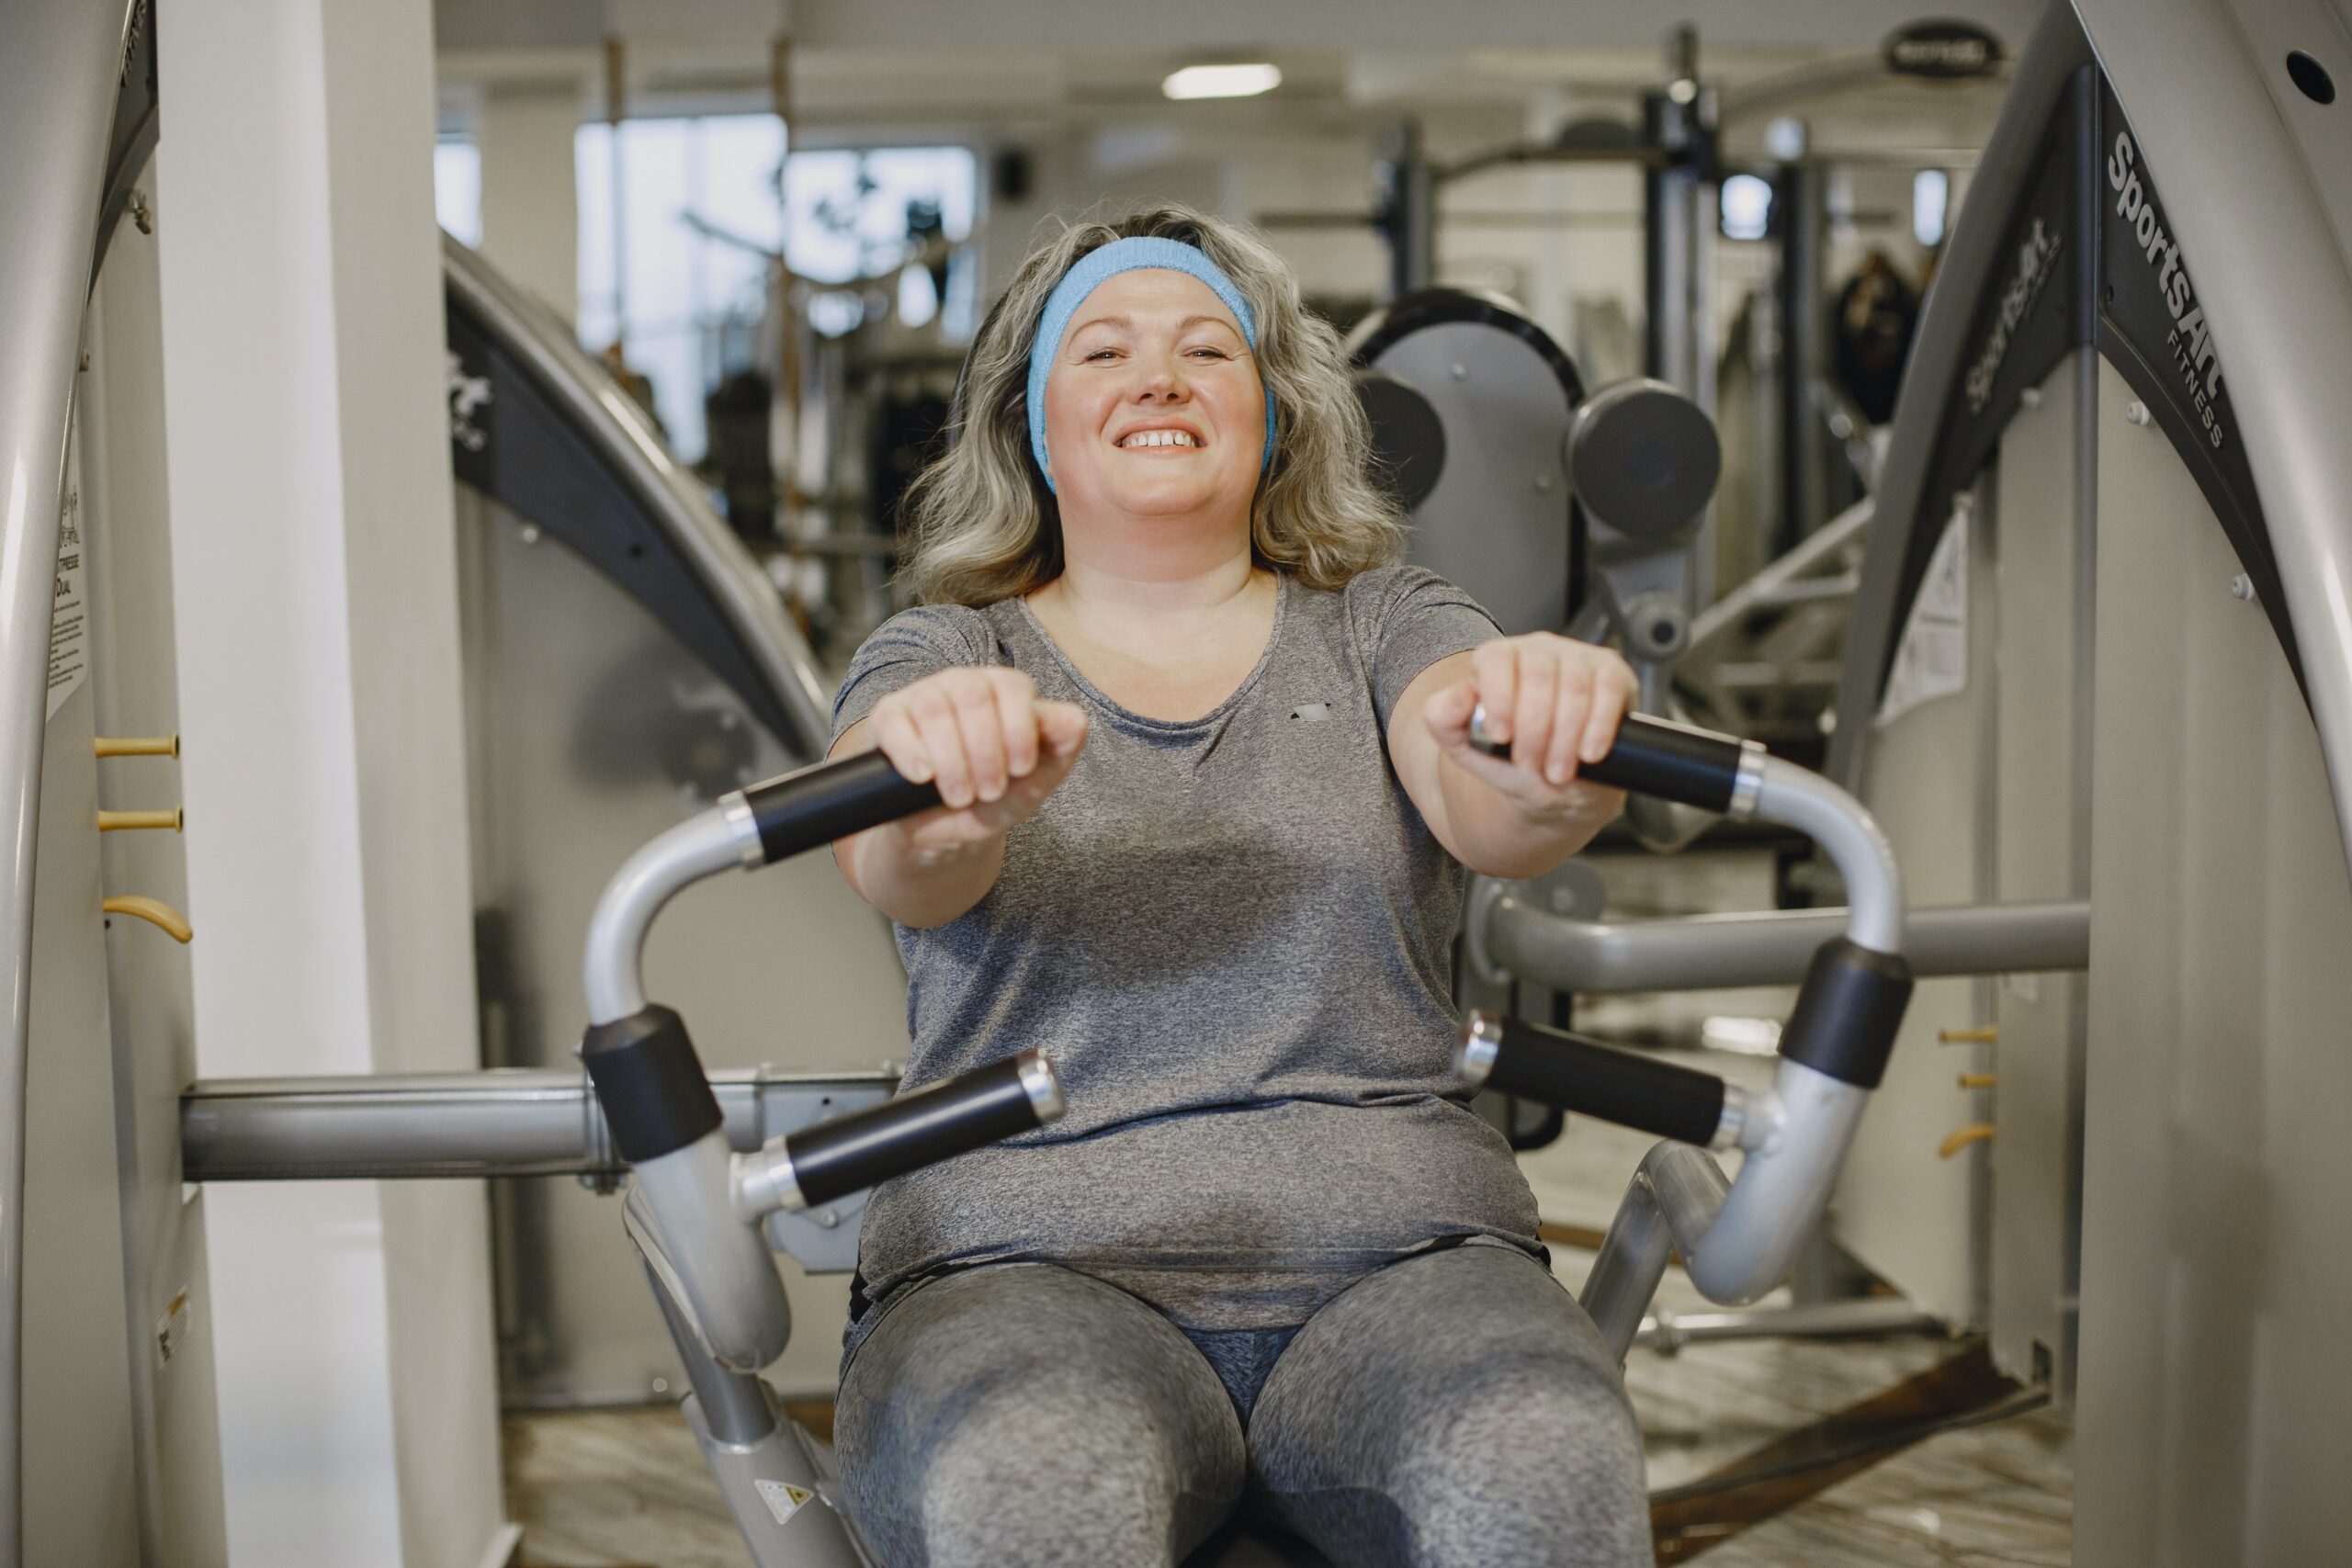 Maak kennis met fitness bij Lifestyle Healthcenter Gennep